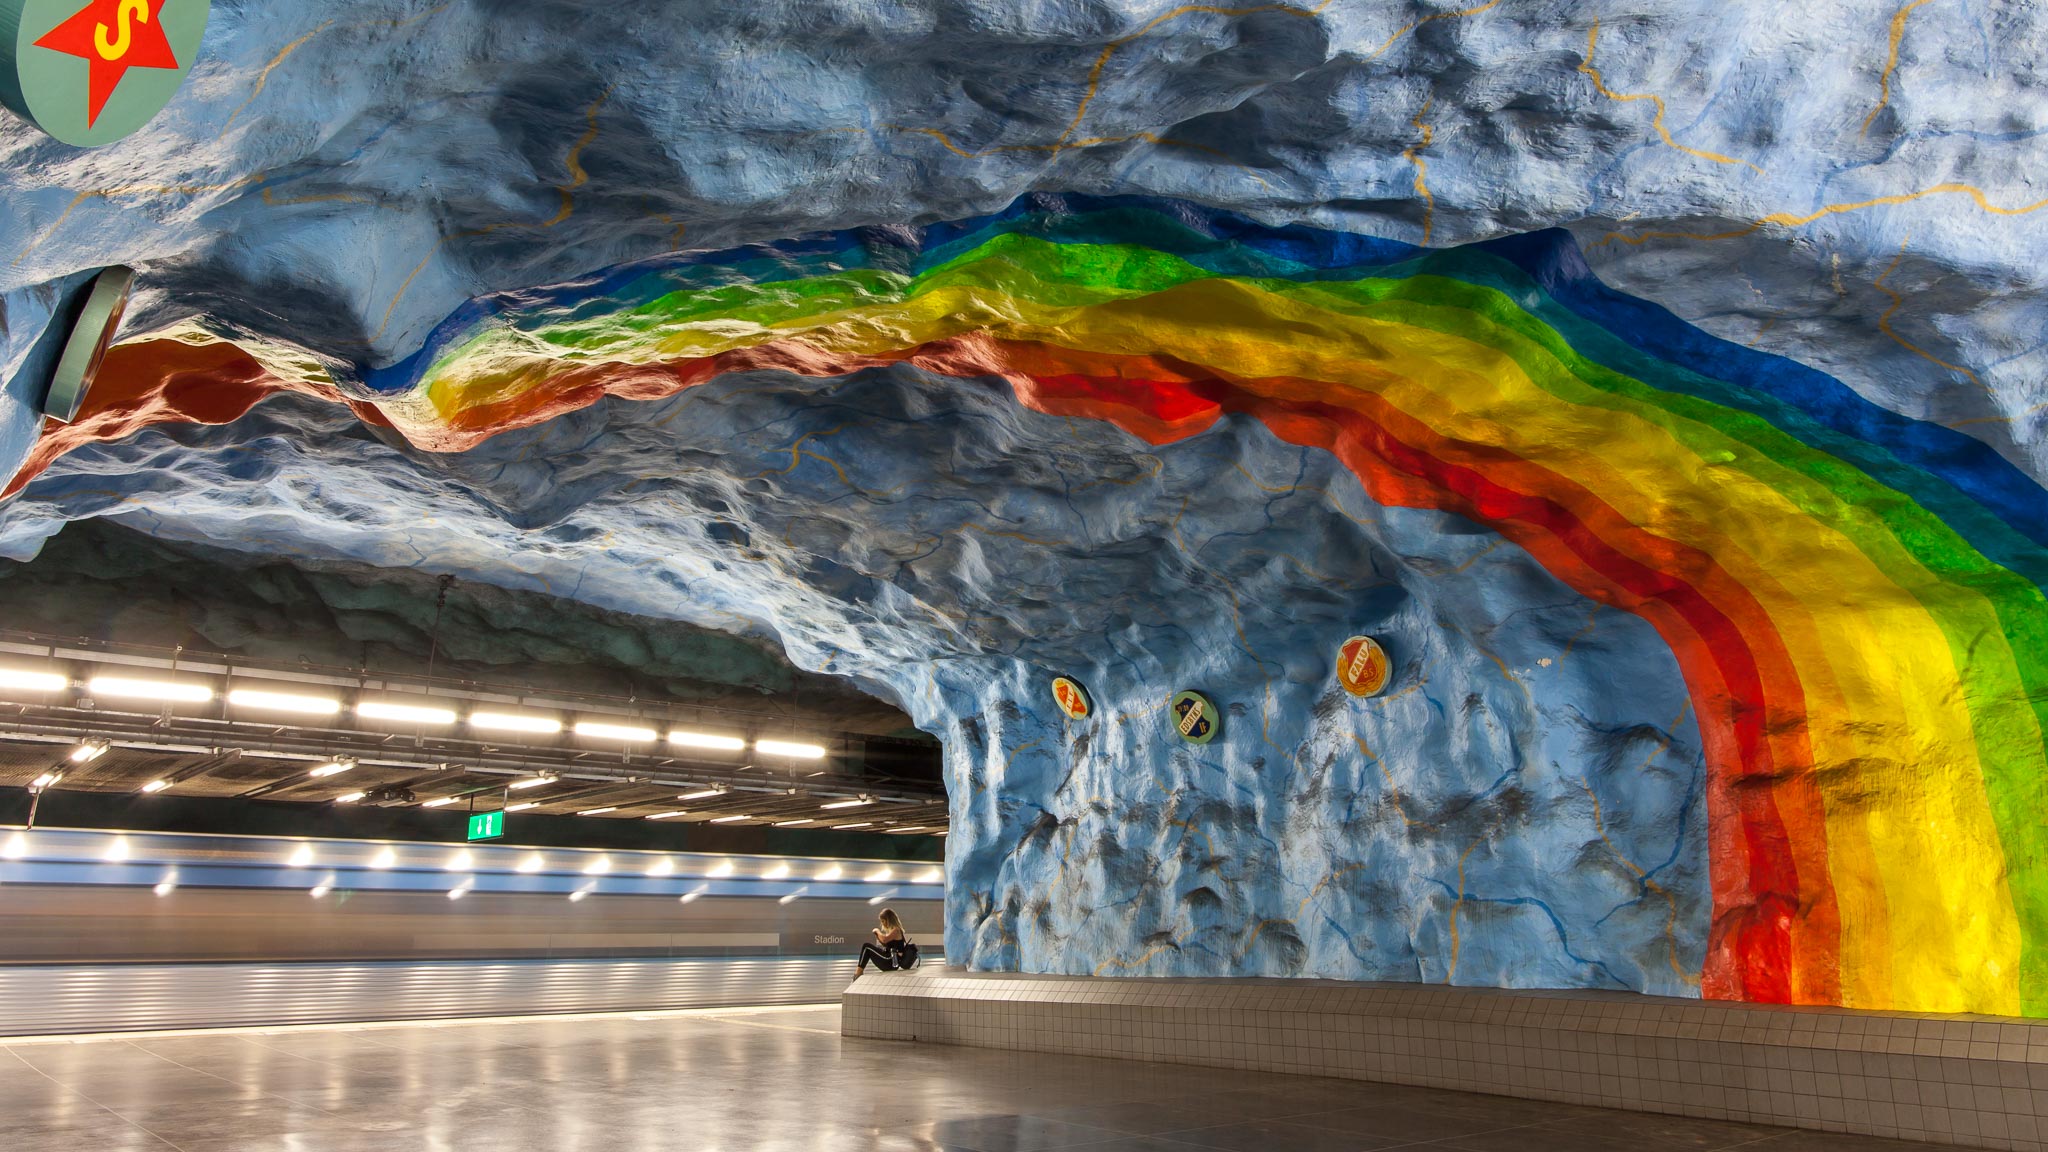 斯德哥尔摩的地铁